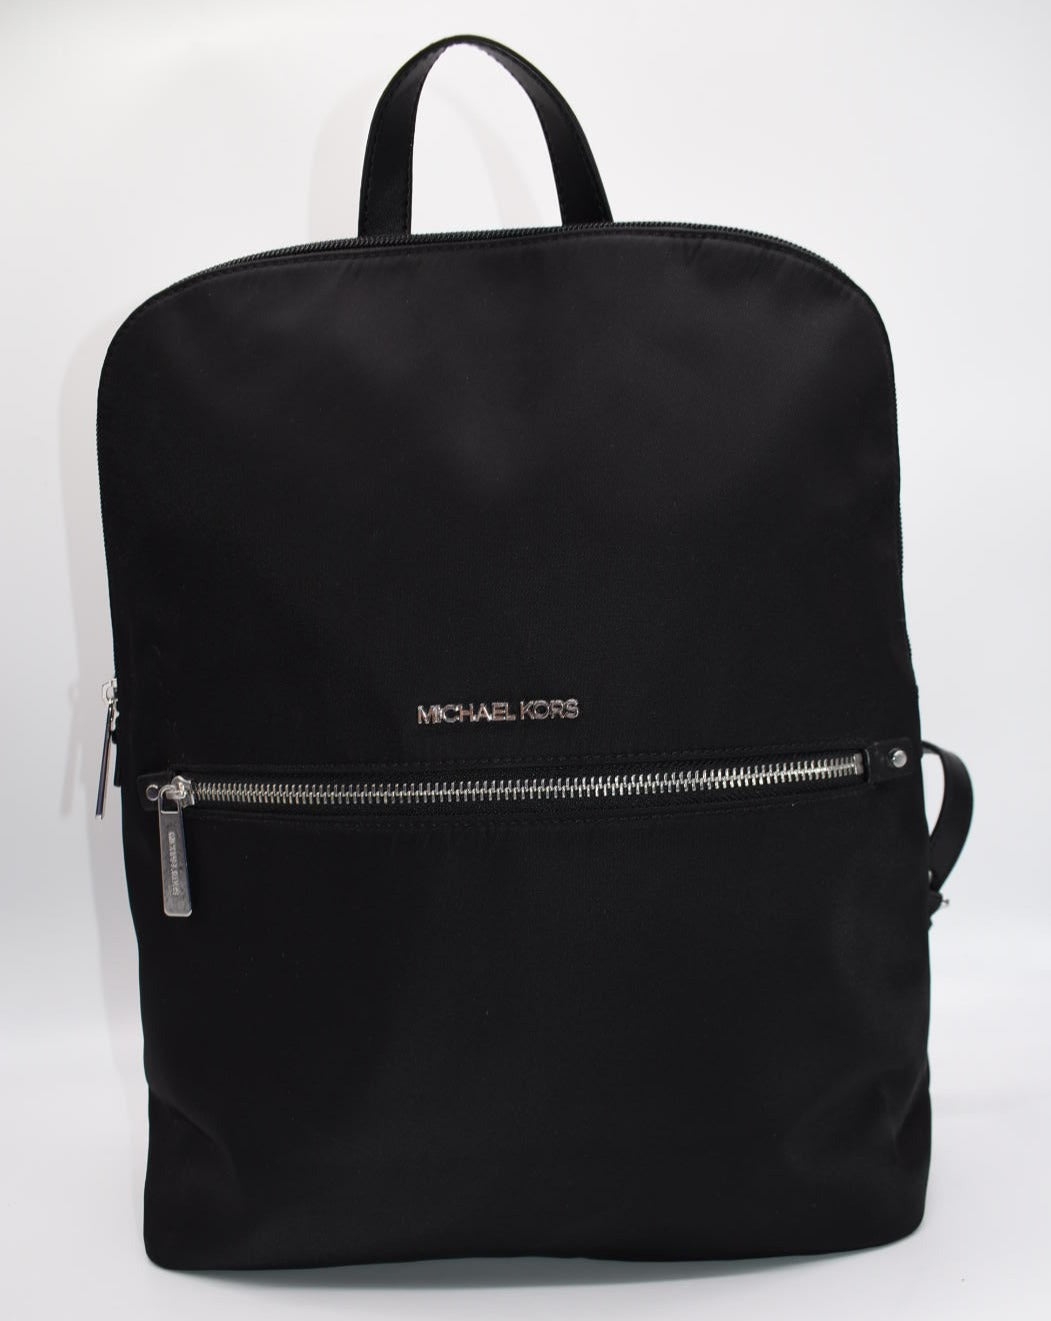 Michael Kors Polly Medium Nylon Backpack